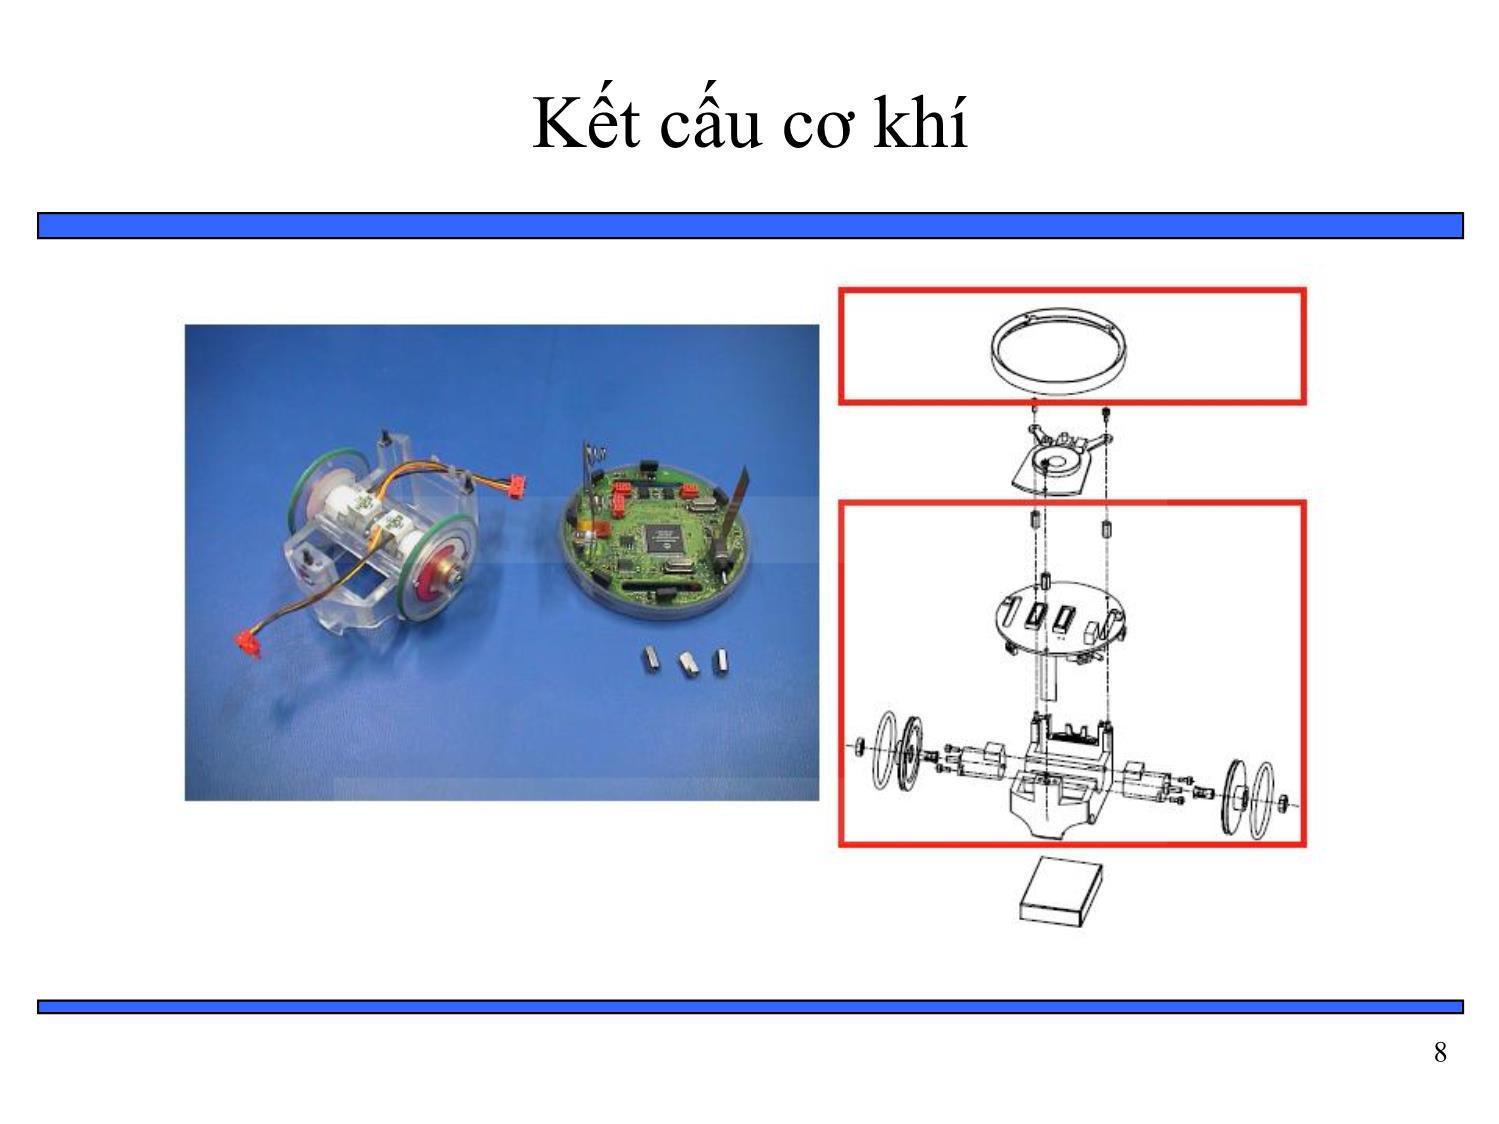 Bài giảng Thiết kế hệ thống nhúng - Chương 6: Tổng hợp phần cứng và phần mềm - Bài 10: Ví dụ về hệ thống nhúng mobile robot trang 8